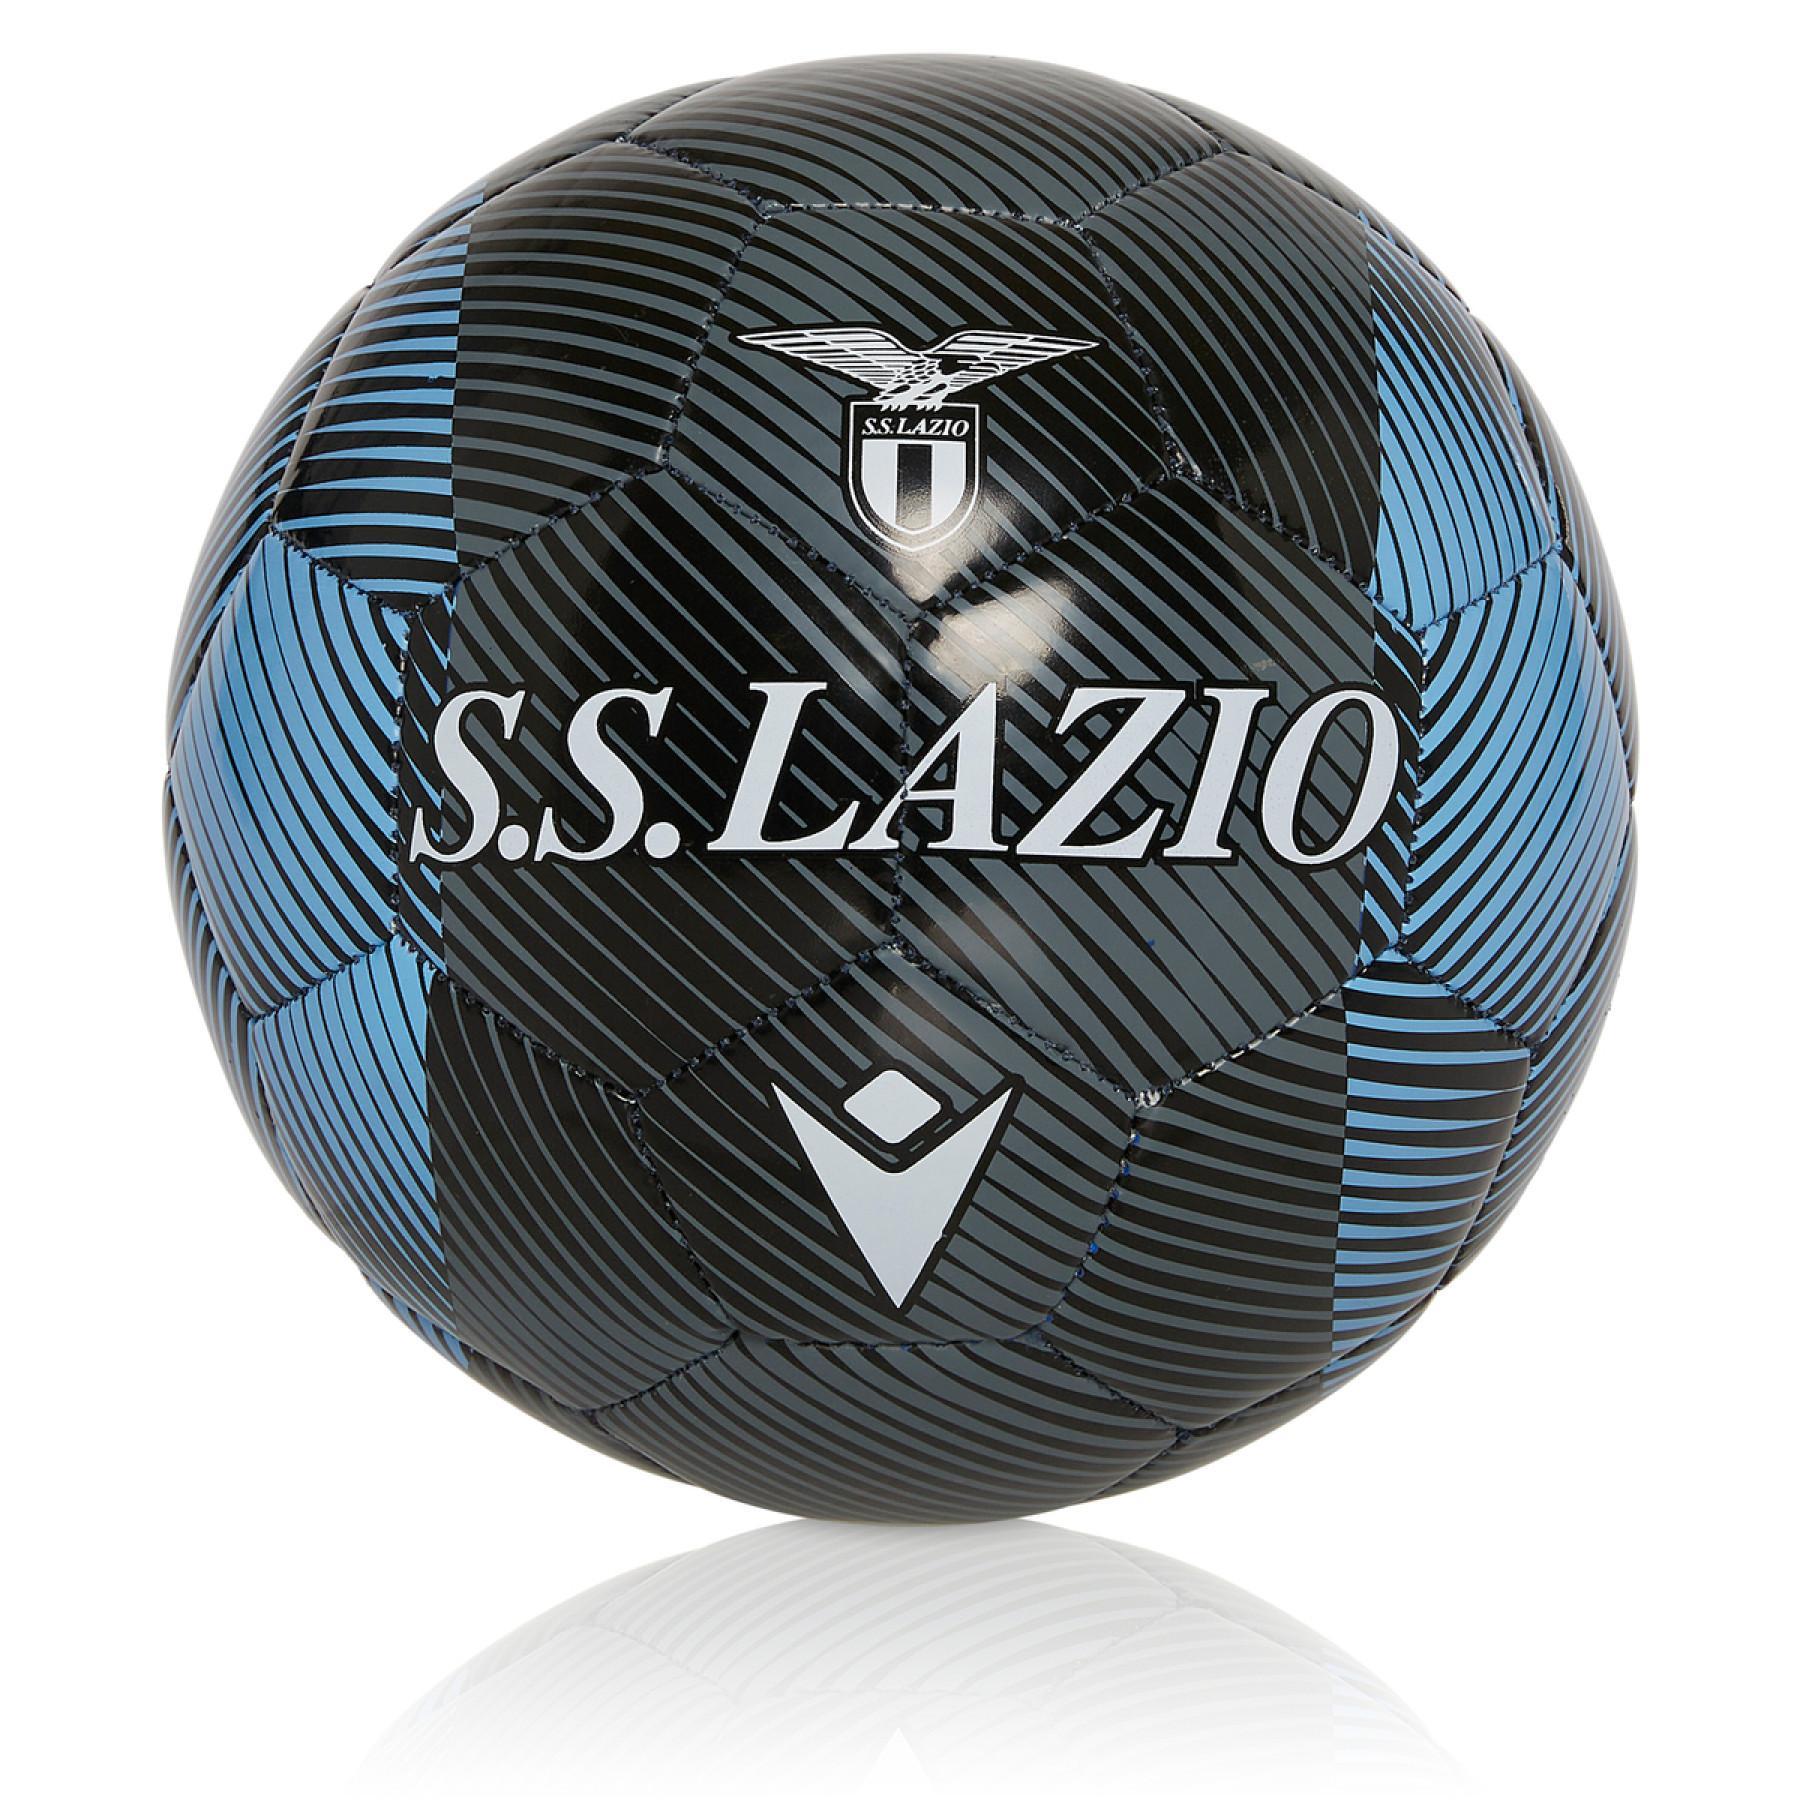 Balloon Lazio Rome 2020/21